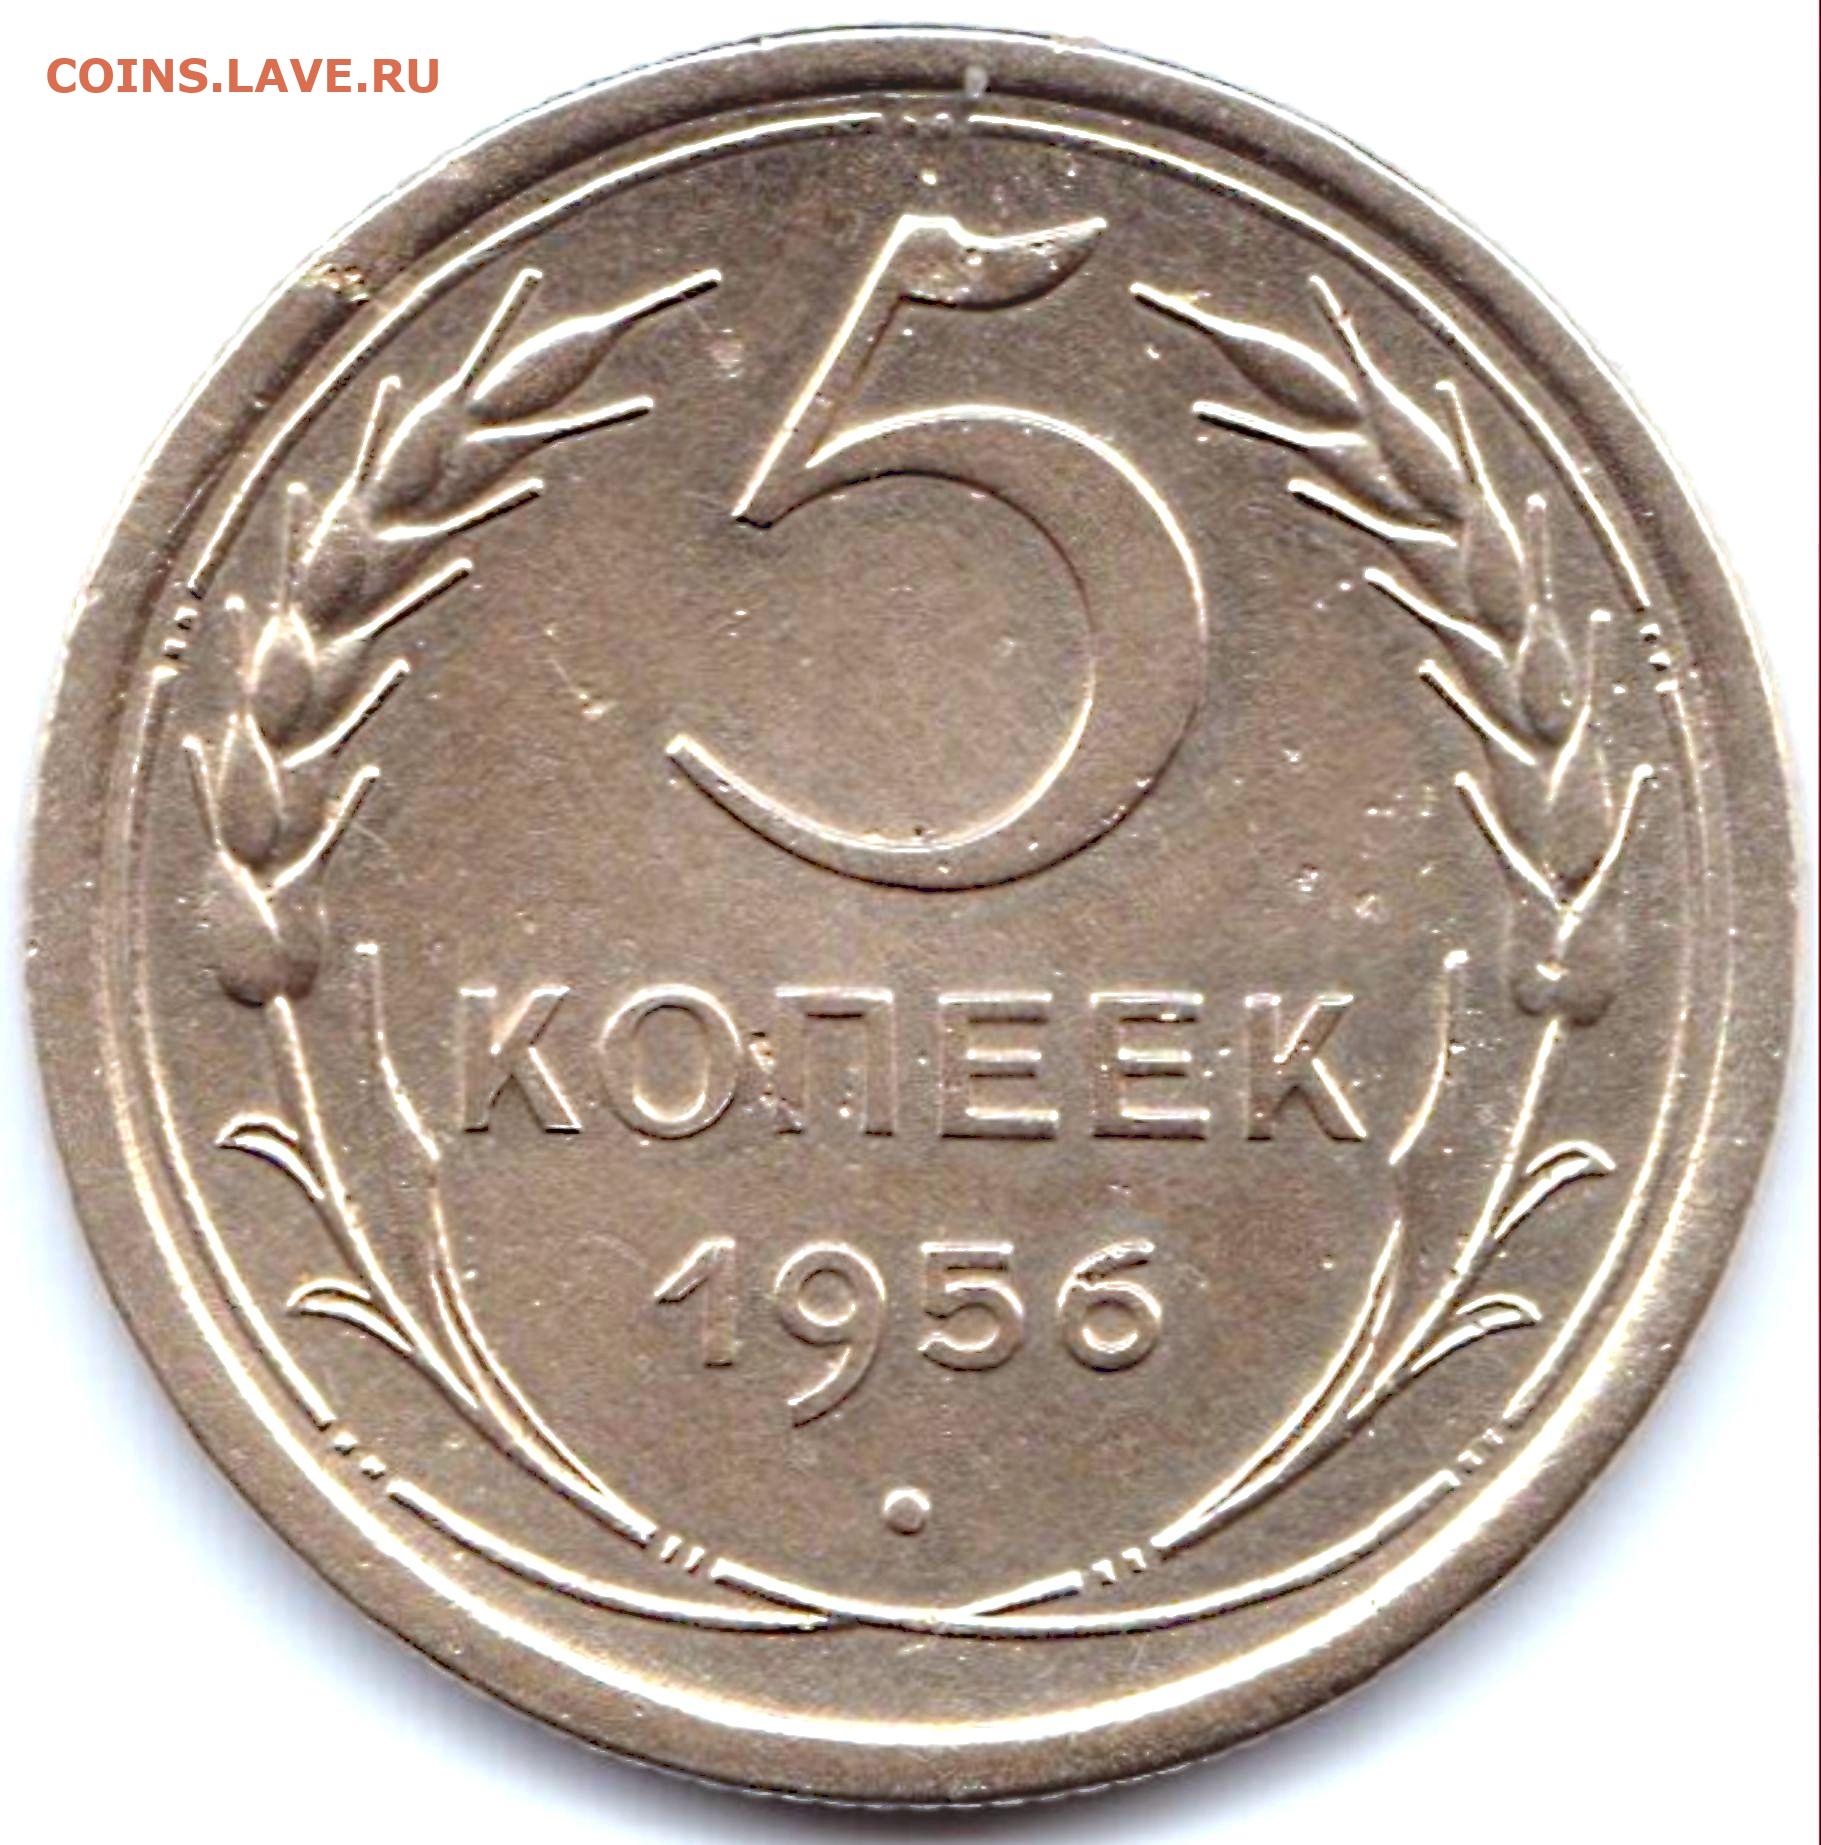 4 рубля 5 копеек. 0.5 Копейки. Монеты 1956г 5 копеек СССР. 25 Копеек 1955. 20 Копеек 1956г.